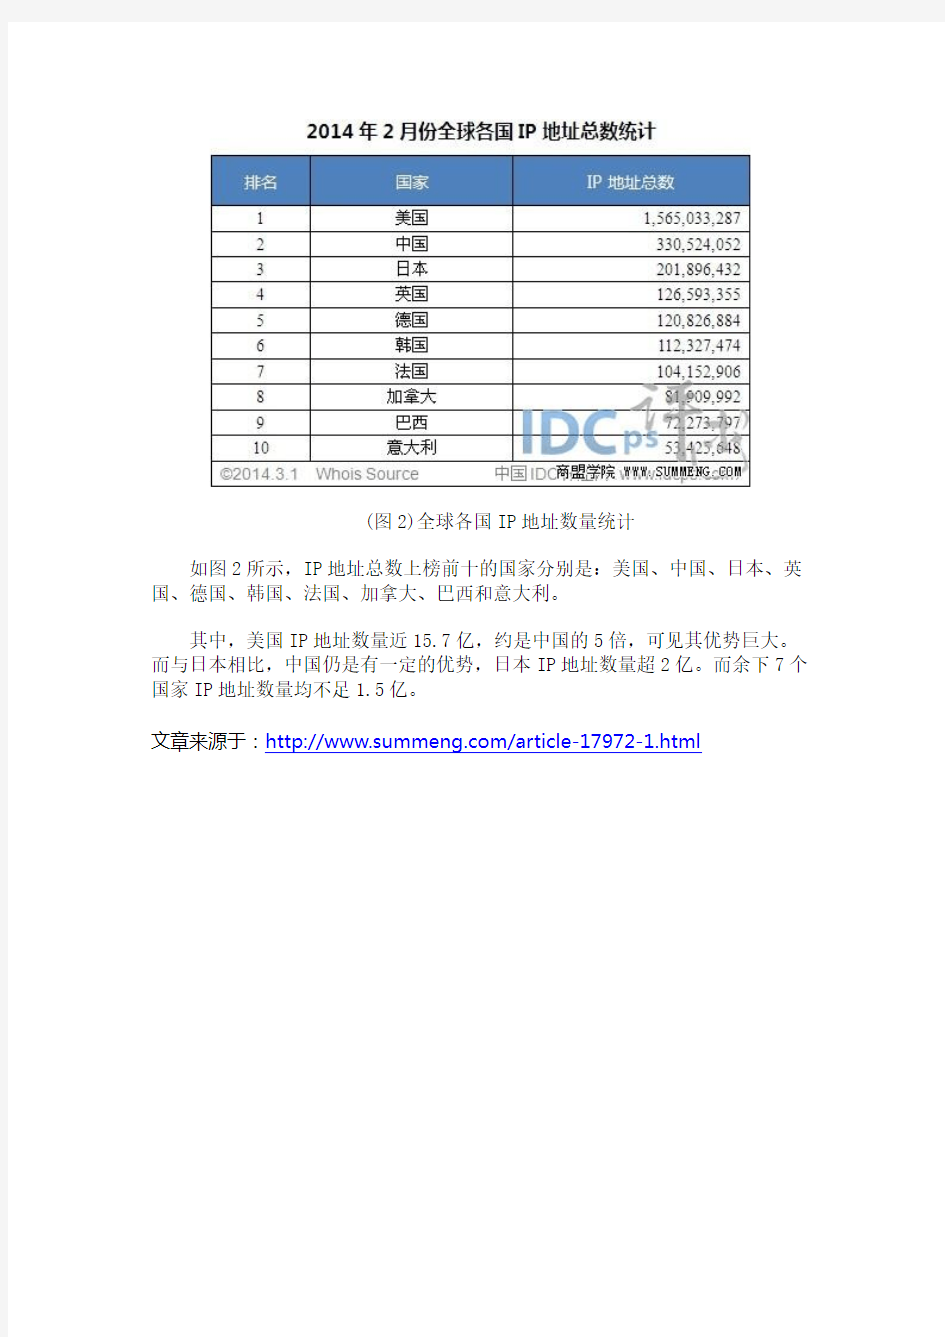 全球各国IP地址数Top10：中国拥有3.31亿居第二